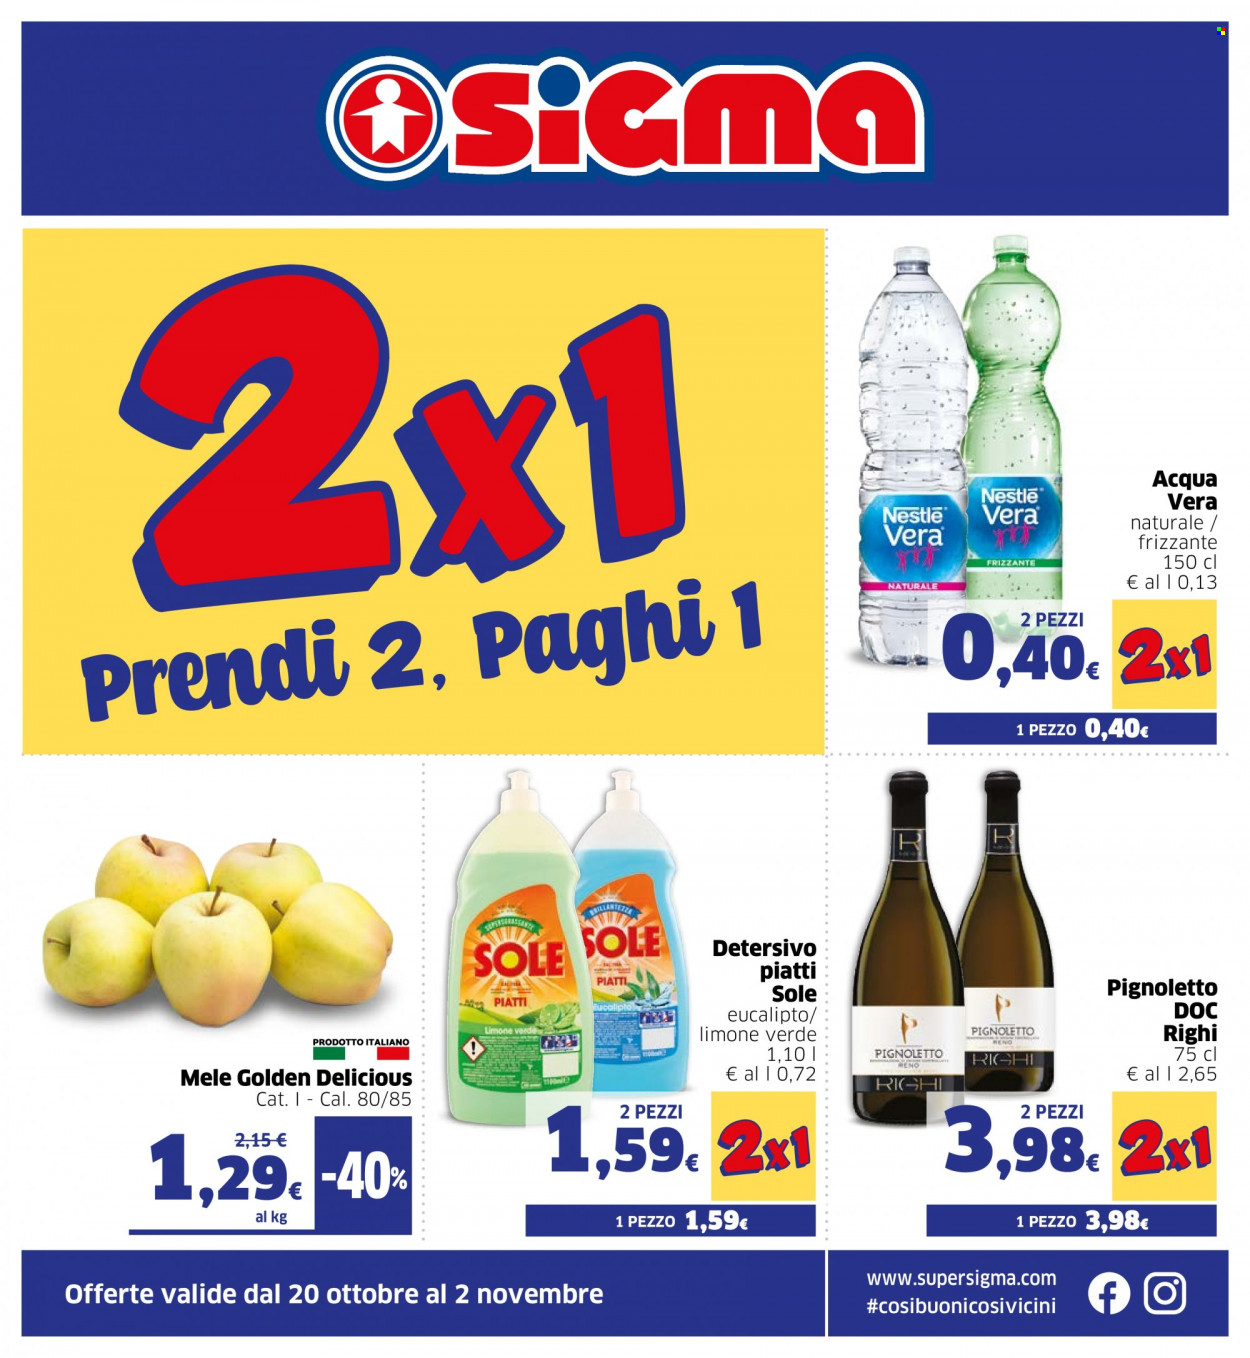 thumbnail - Volantino Sigma - 20/10/2021 - 2/11/2021 - Prodotti in offerta - Golden Delicious, Nestlé, vino, Pignoletto, detersivo, detergente per piatti. Pagina 1.